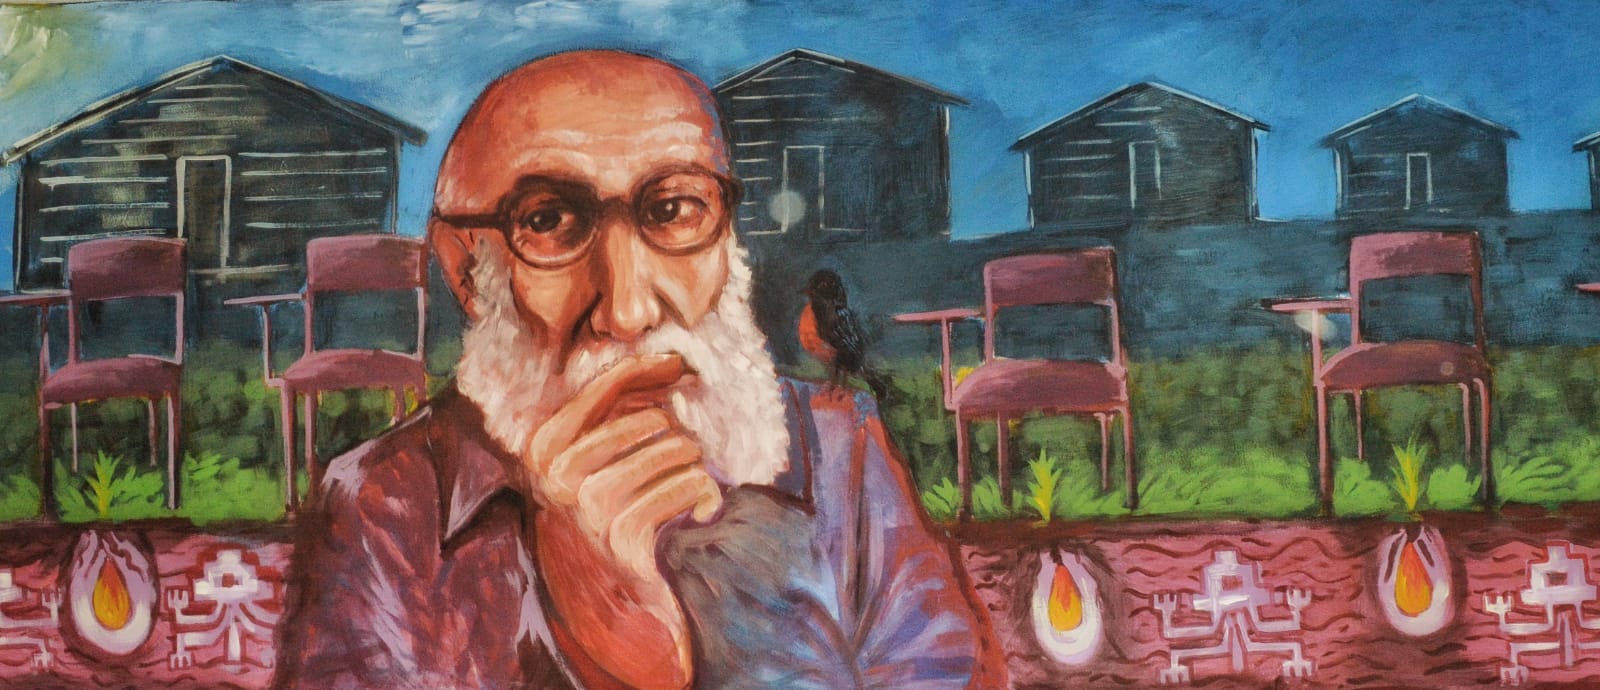 Paulo Freire, un educador para la libertad